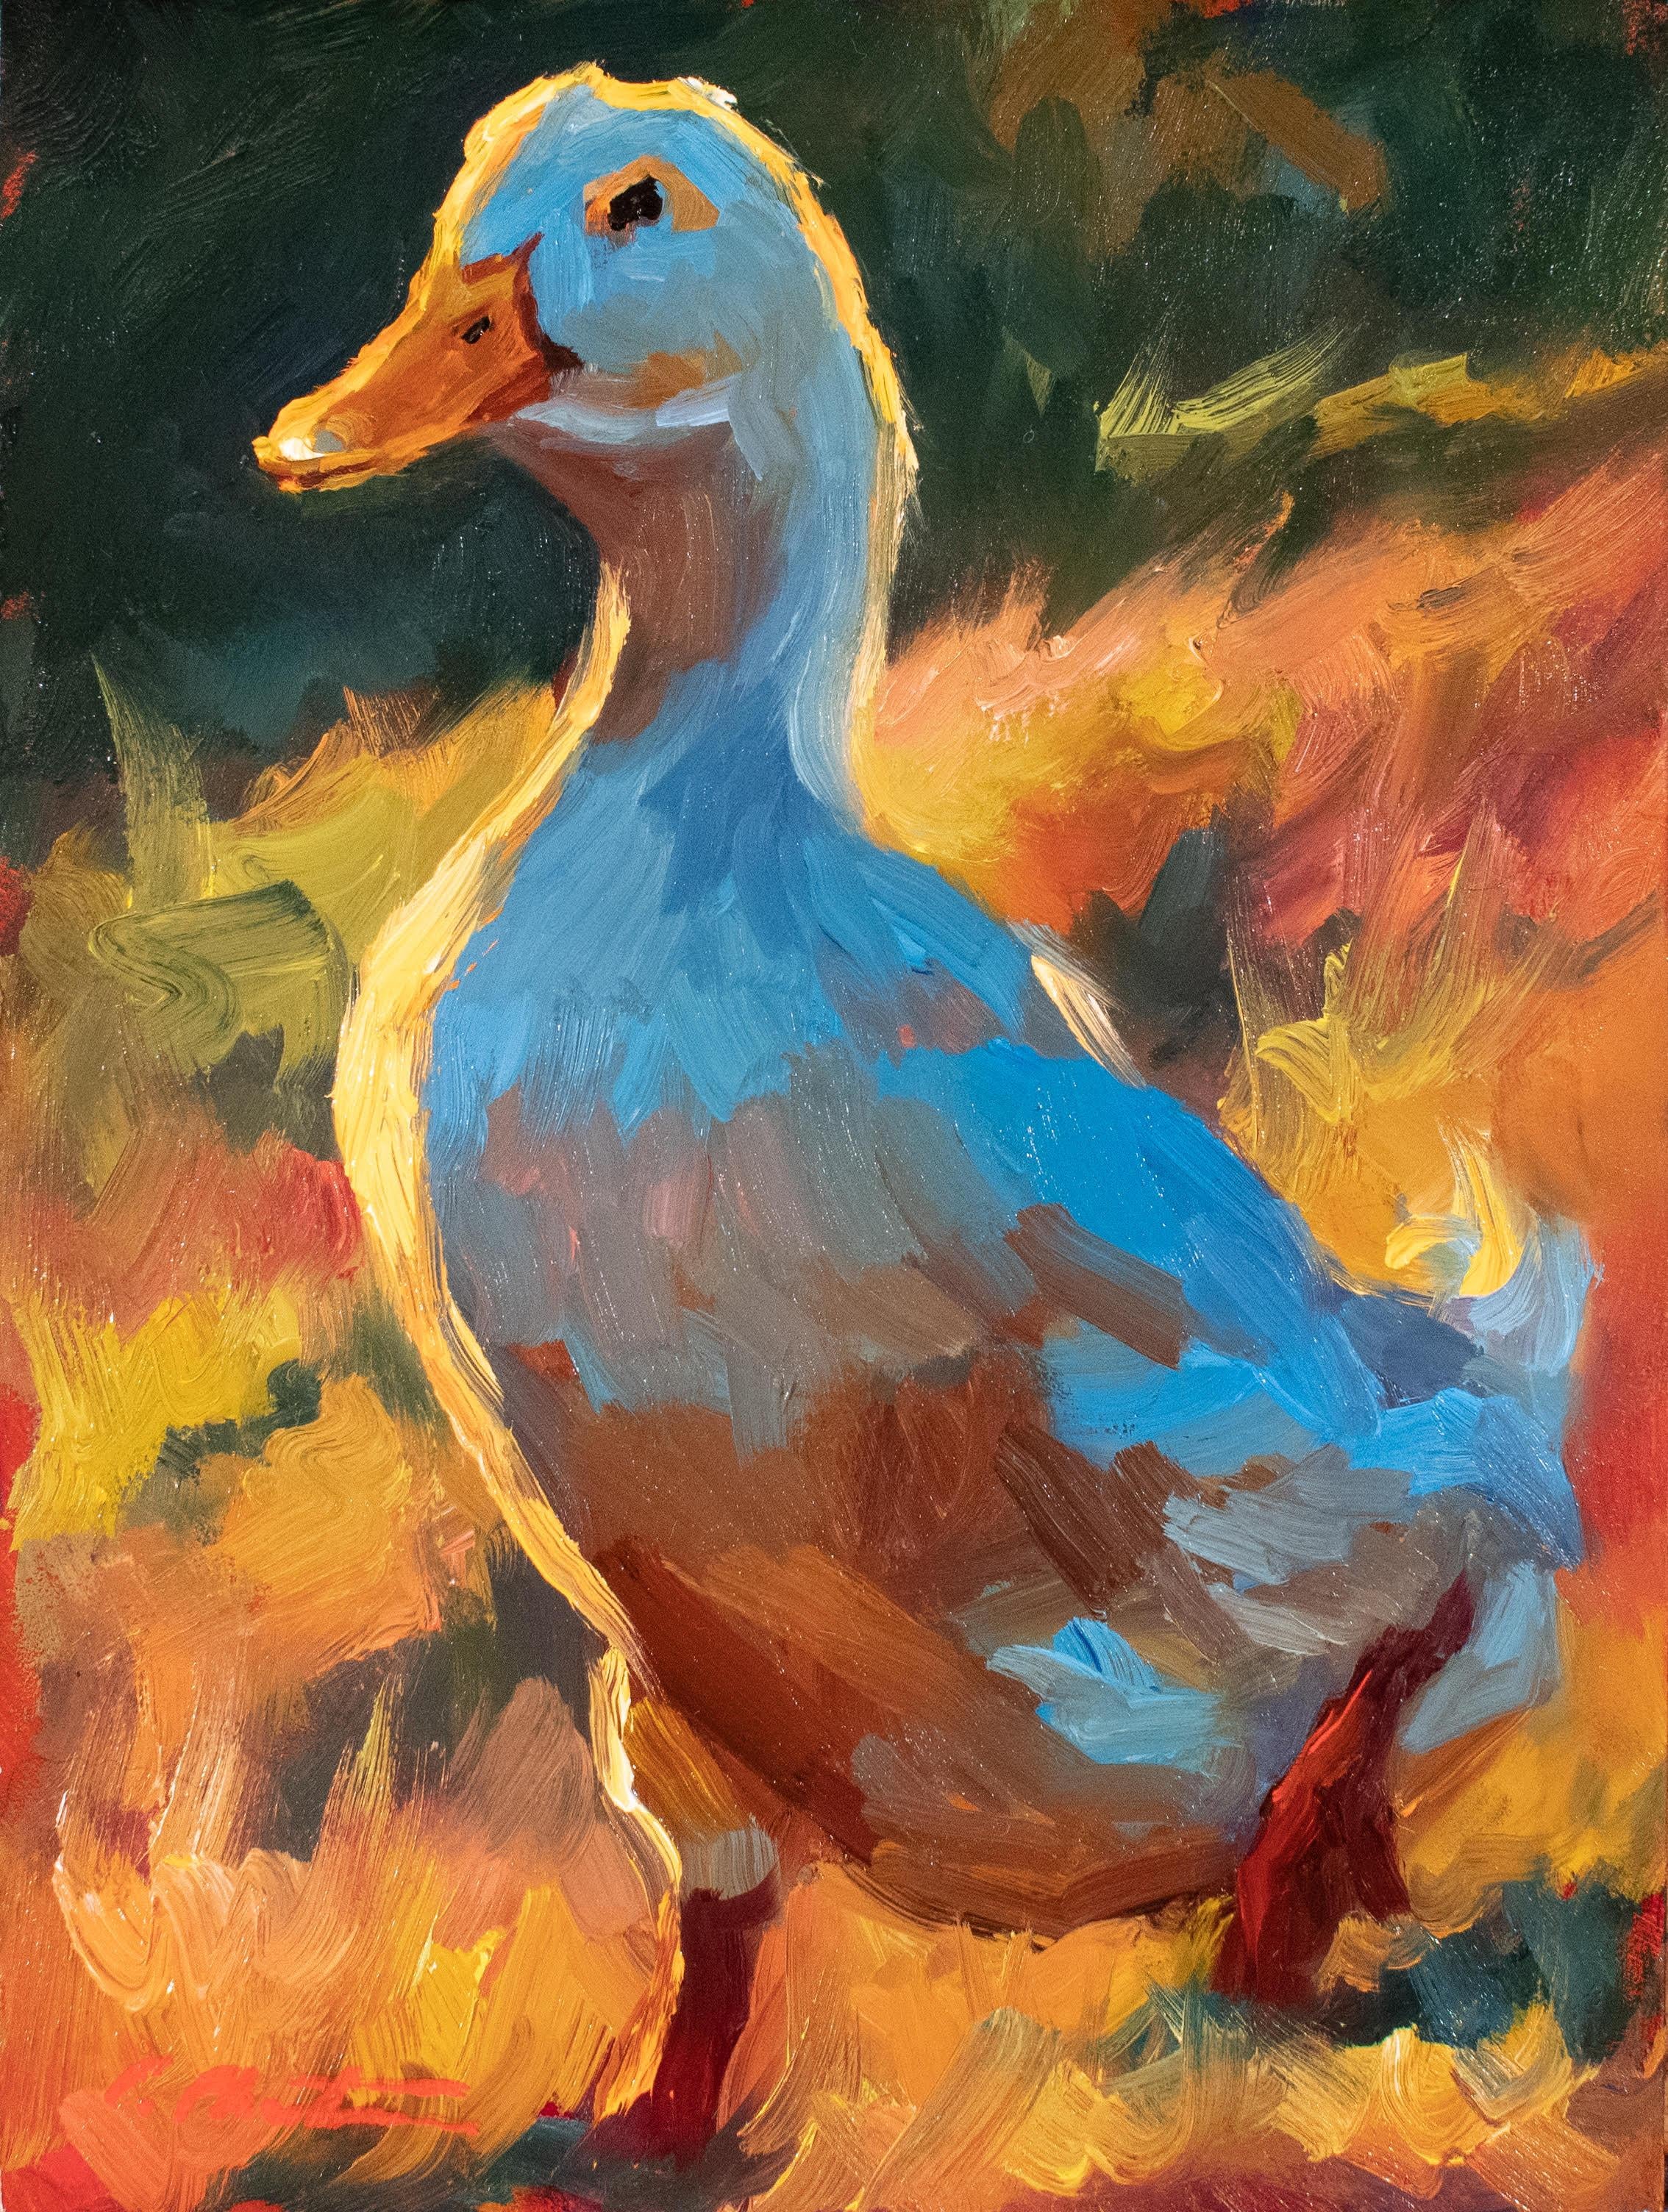 Animal Painting Cheri Christensen - Peinture à l'huile à petite échelle « A Sunday Stroll II » d'un canard blanc avec arrière-plan